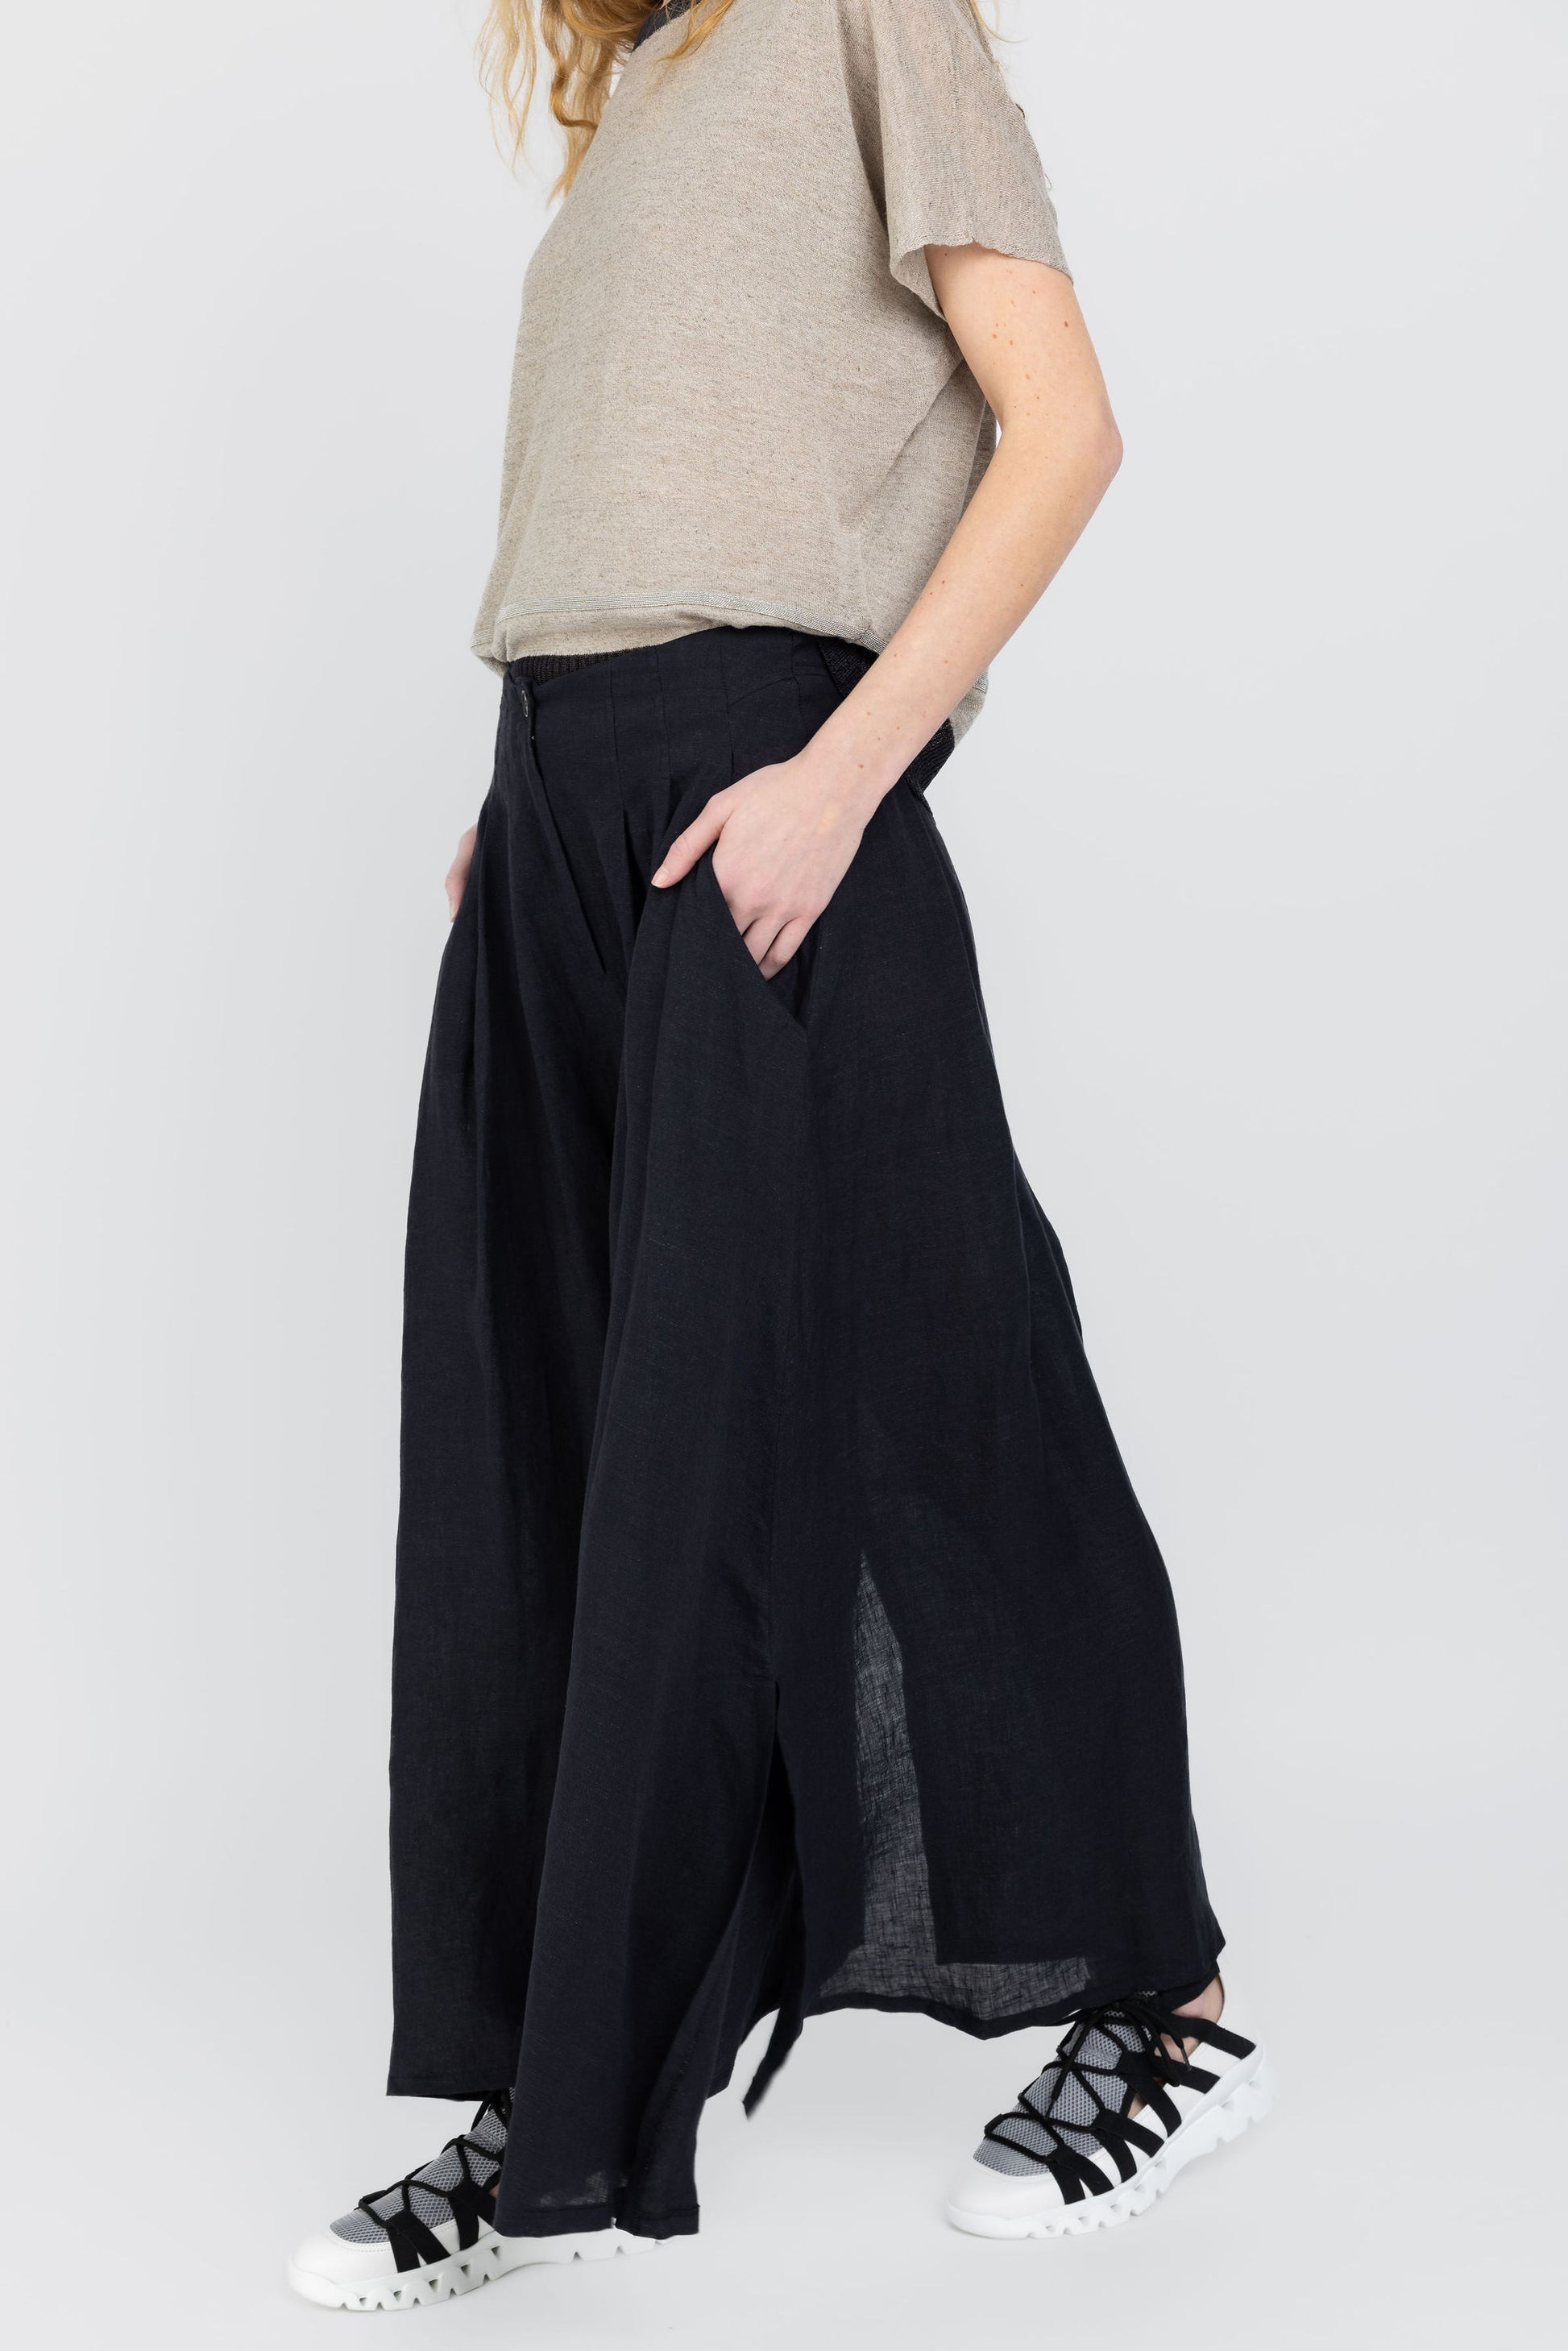 FABIANA FILIPPI Long Linen Skirt in Nero